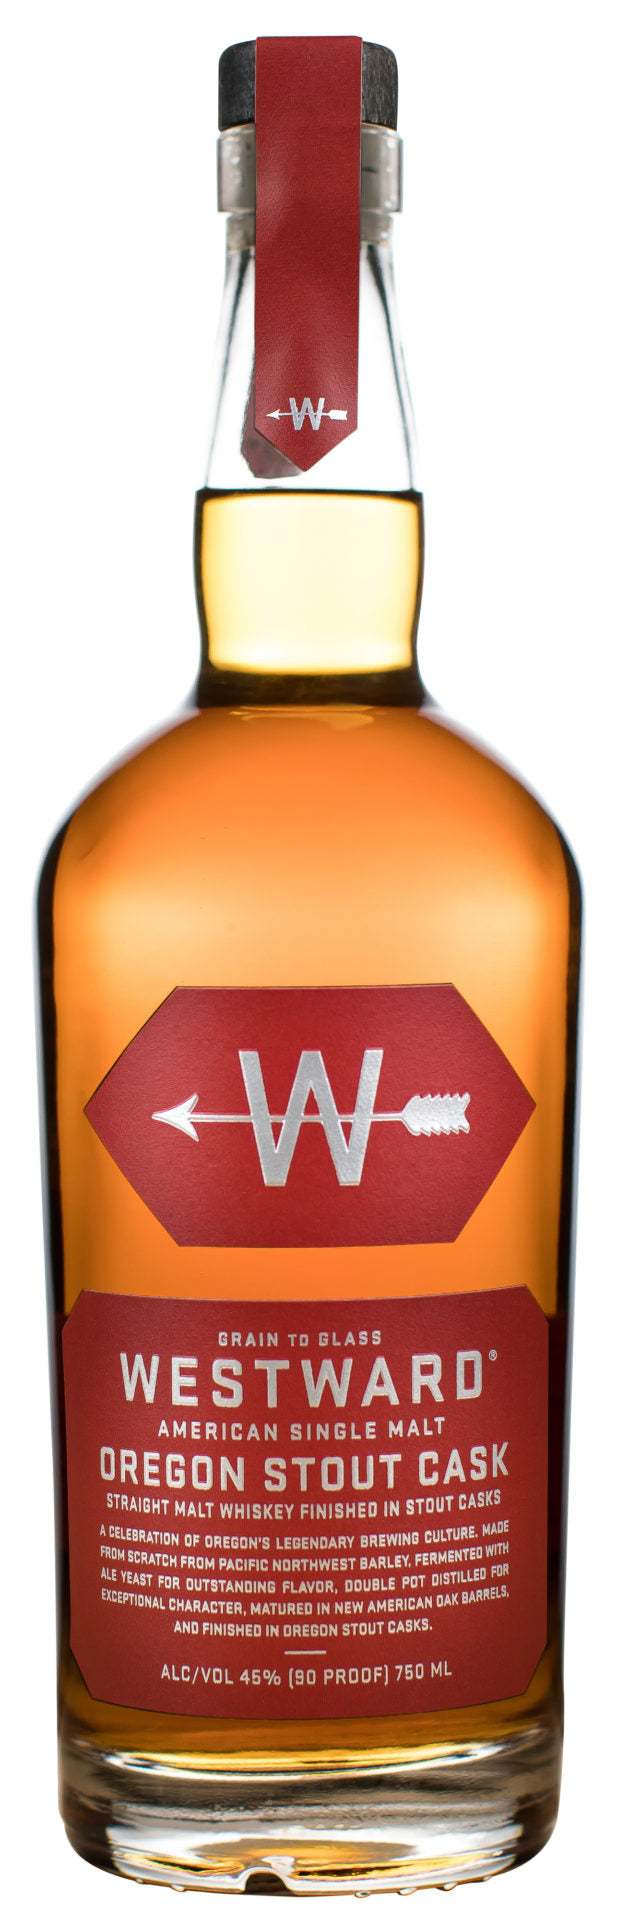 Westward Stout Cask Finish American Single Malt Whiskey